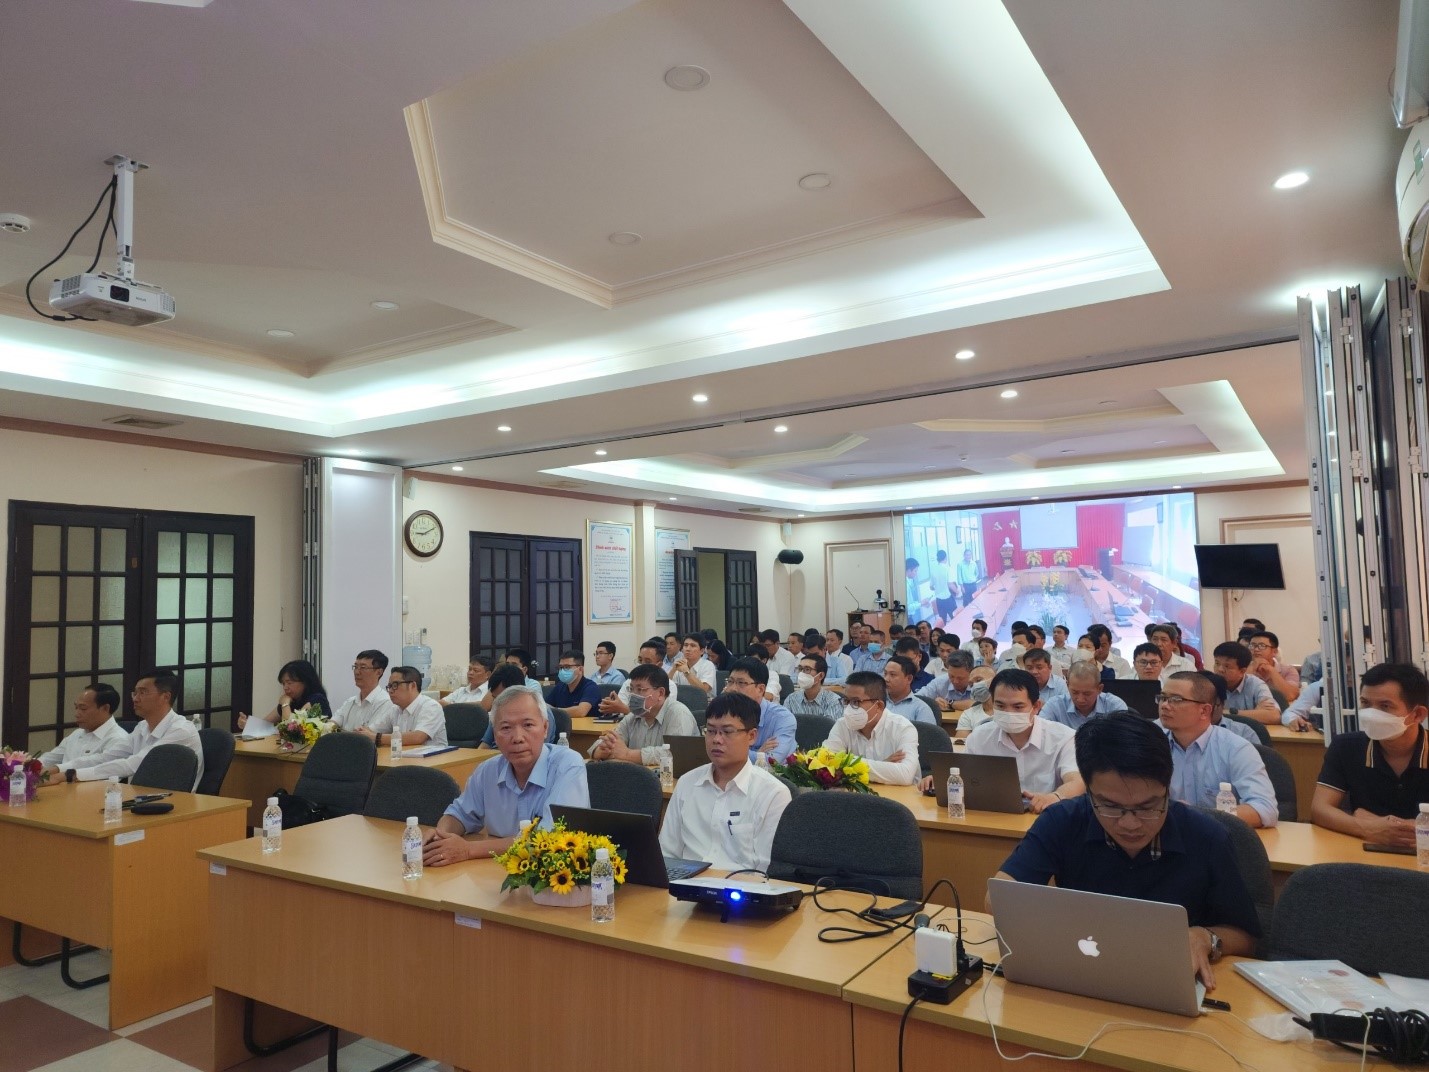 Hội nghị tập huấn liên quan đến thỏa thuận thừa nhận lẫn nhau về dịch vụ tư vấn kỹ thuật trong ASEAN